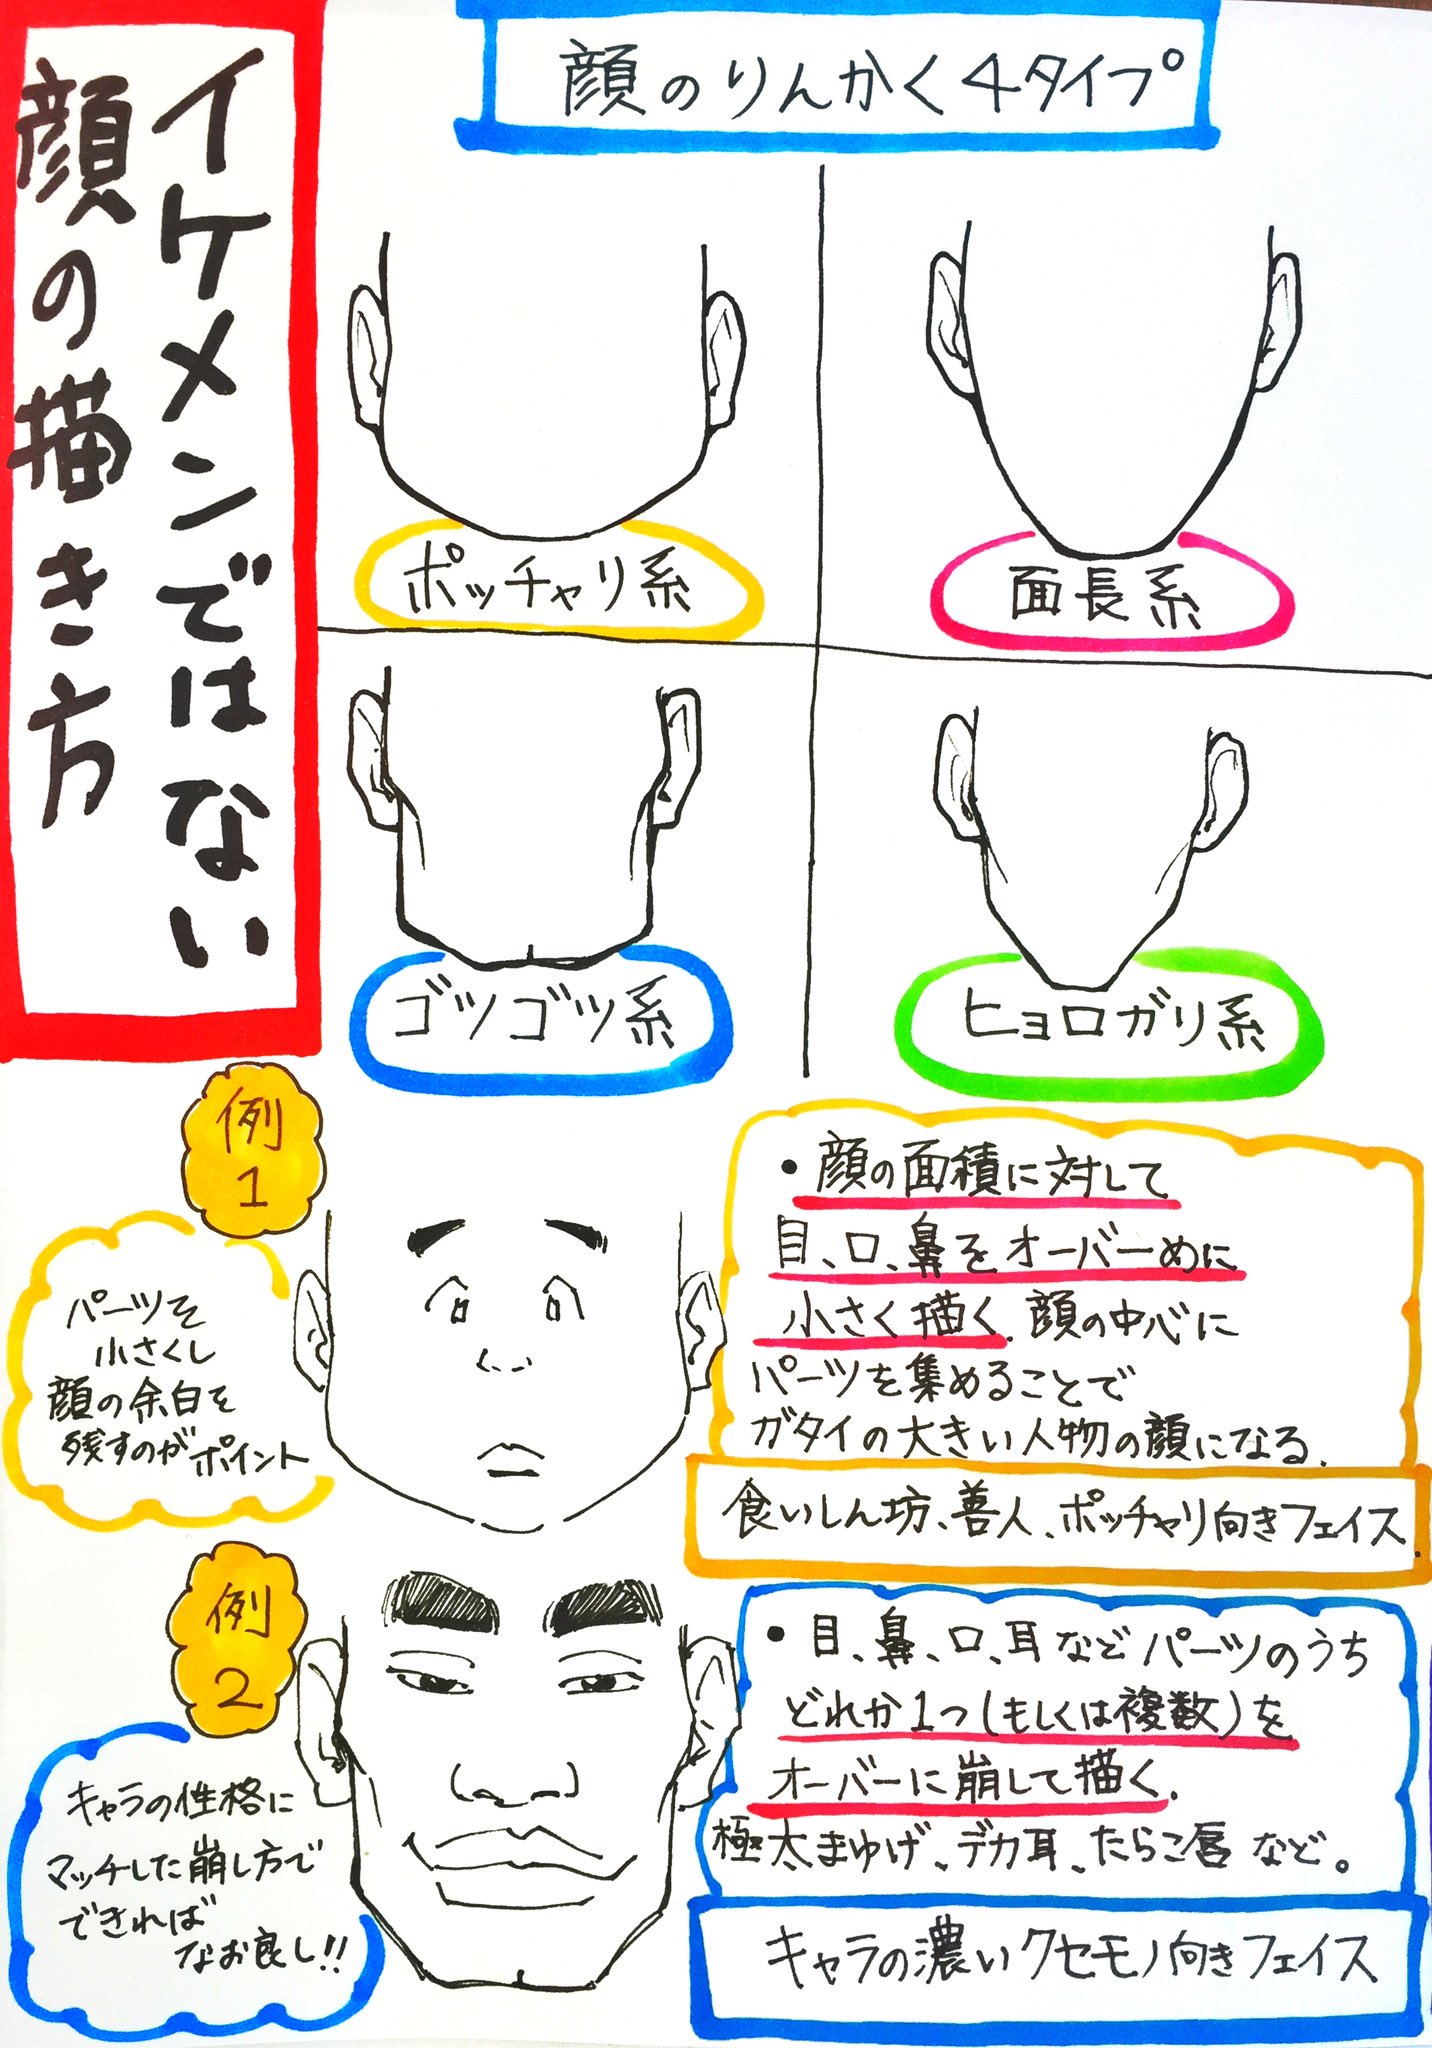 吉村拓也 イラスト講座 イケメンにしない 濃いキャラ にしたい時の 非イケメン顔の描き方